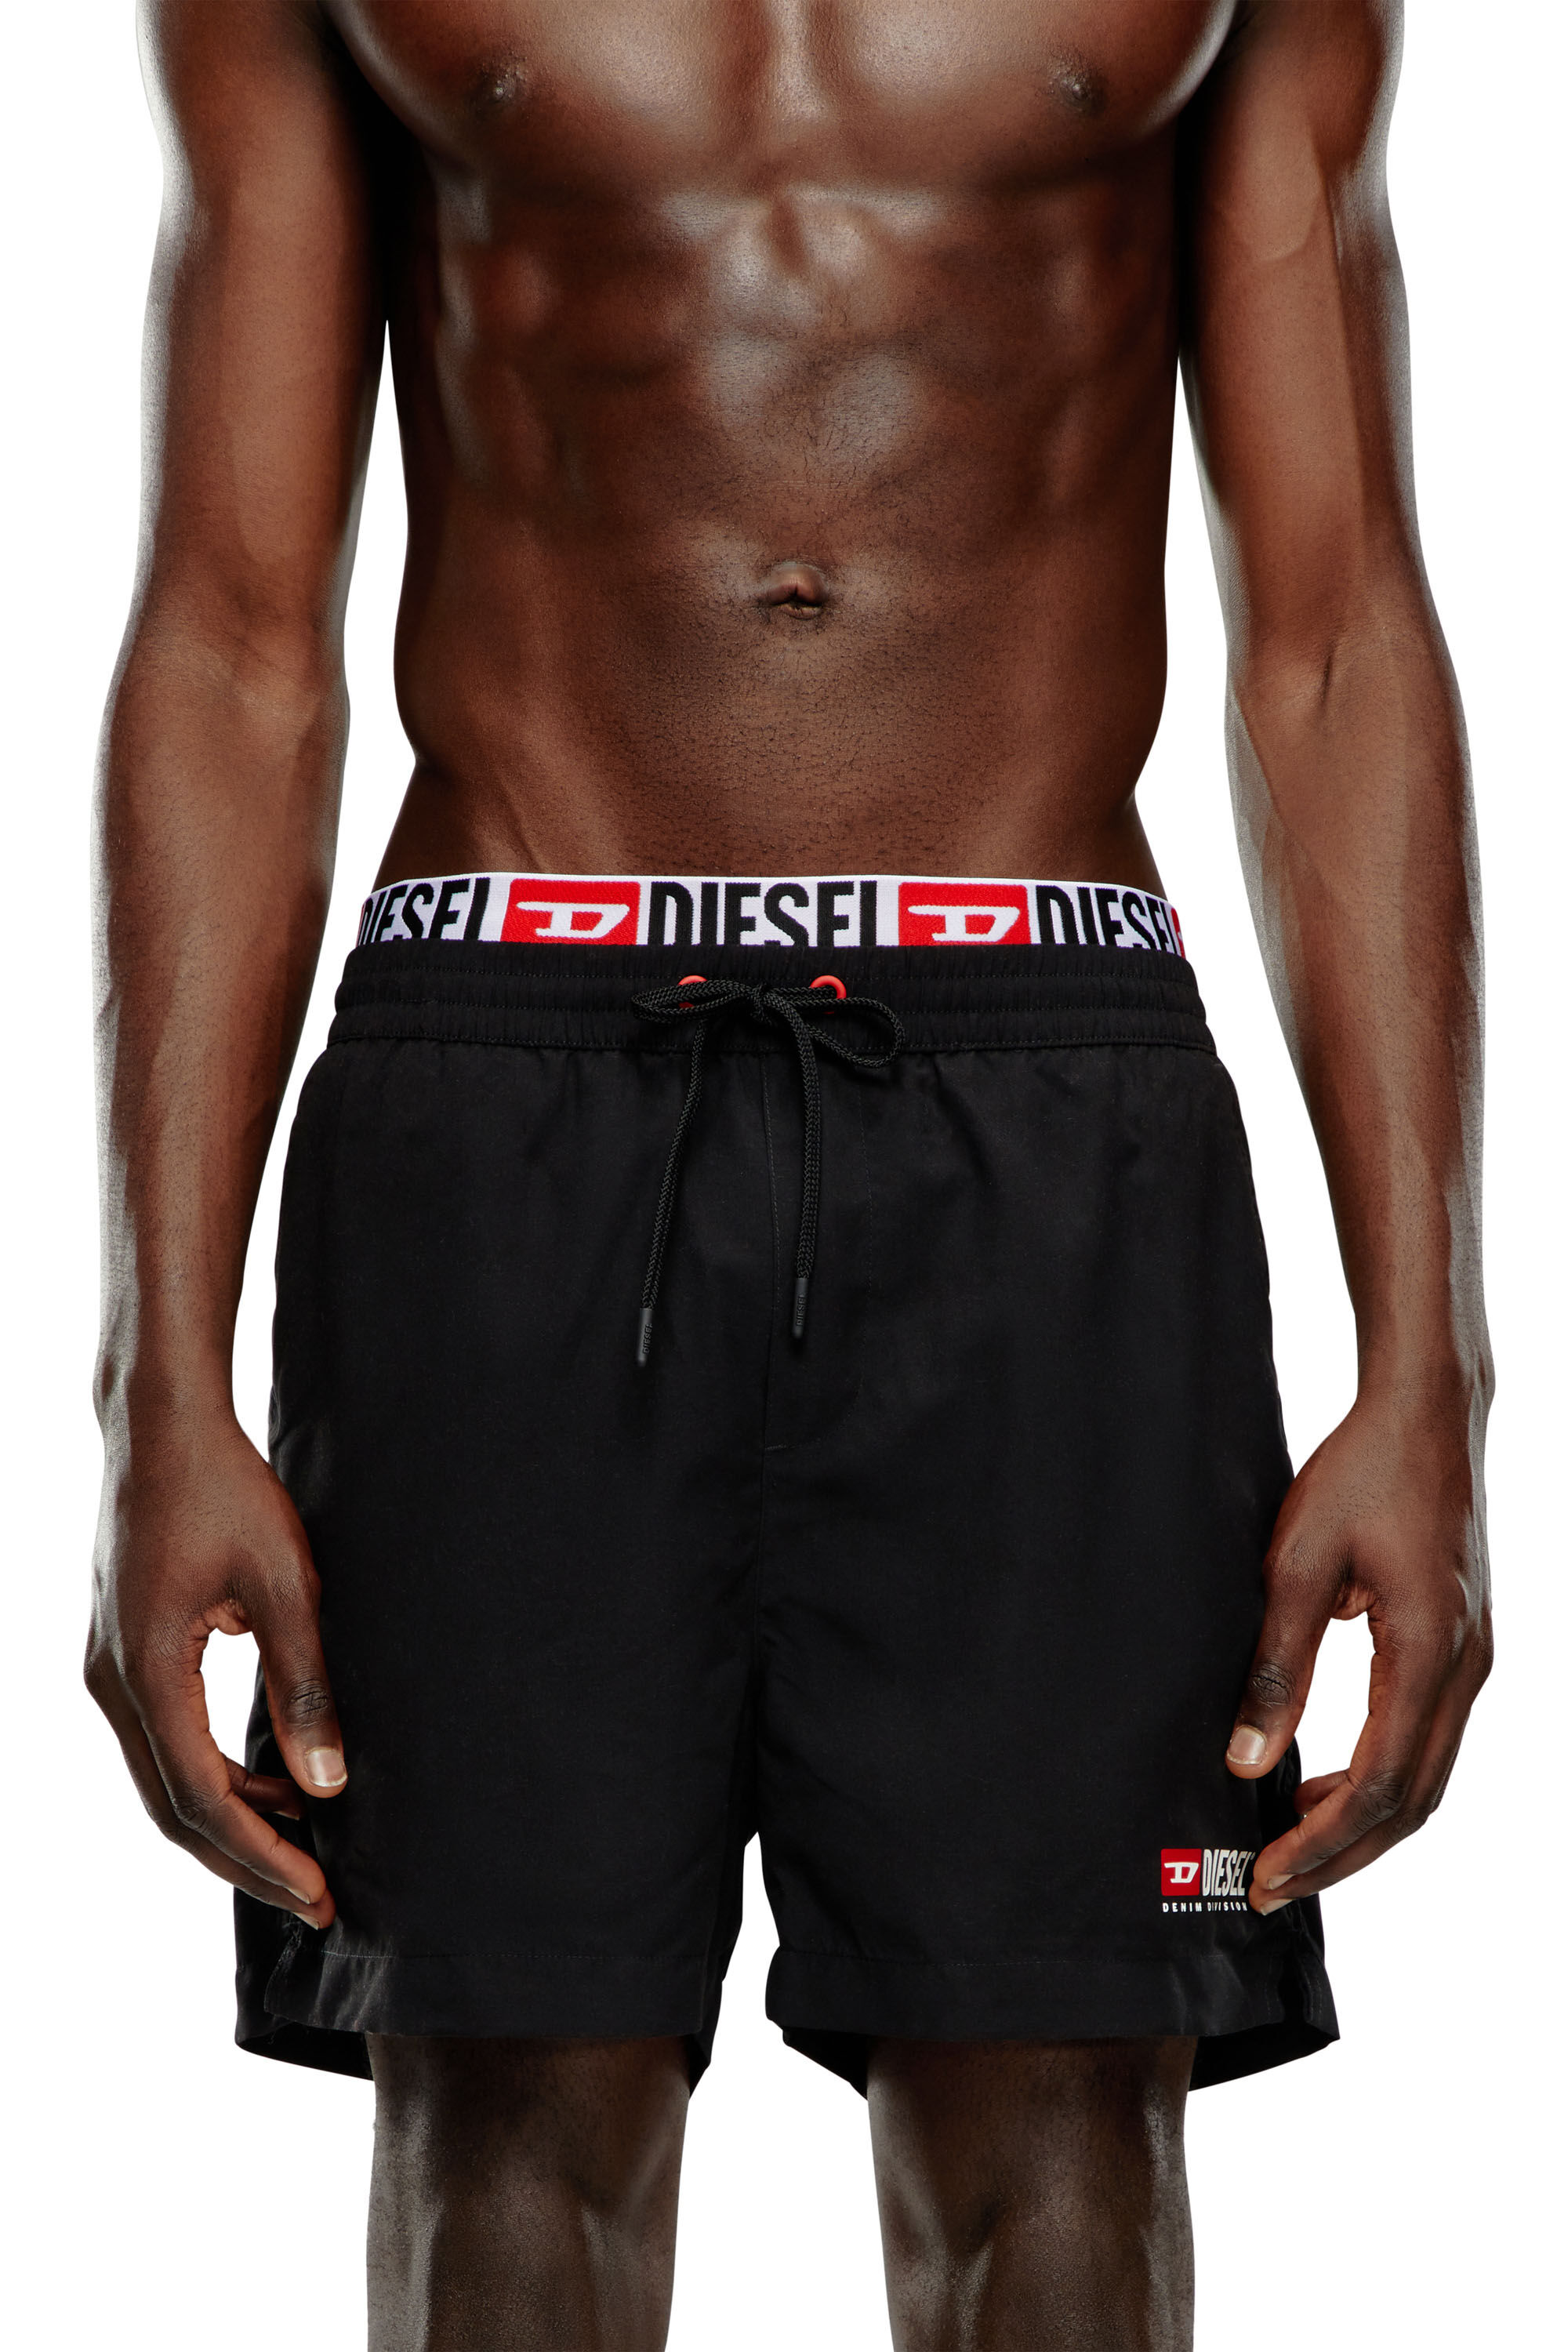 Diesel - BMBX-VISPER-41, Man Double-waist board shorts in Black - Image 1